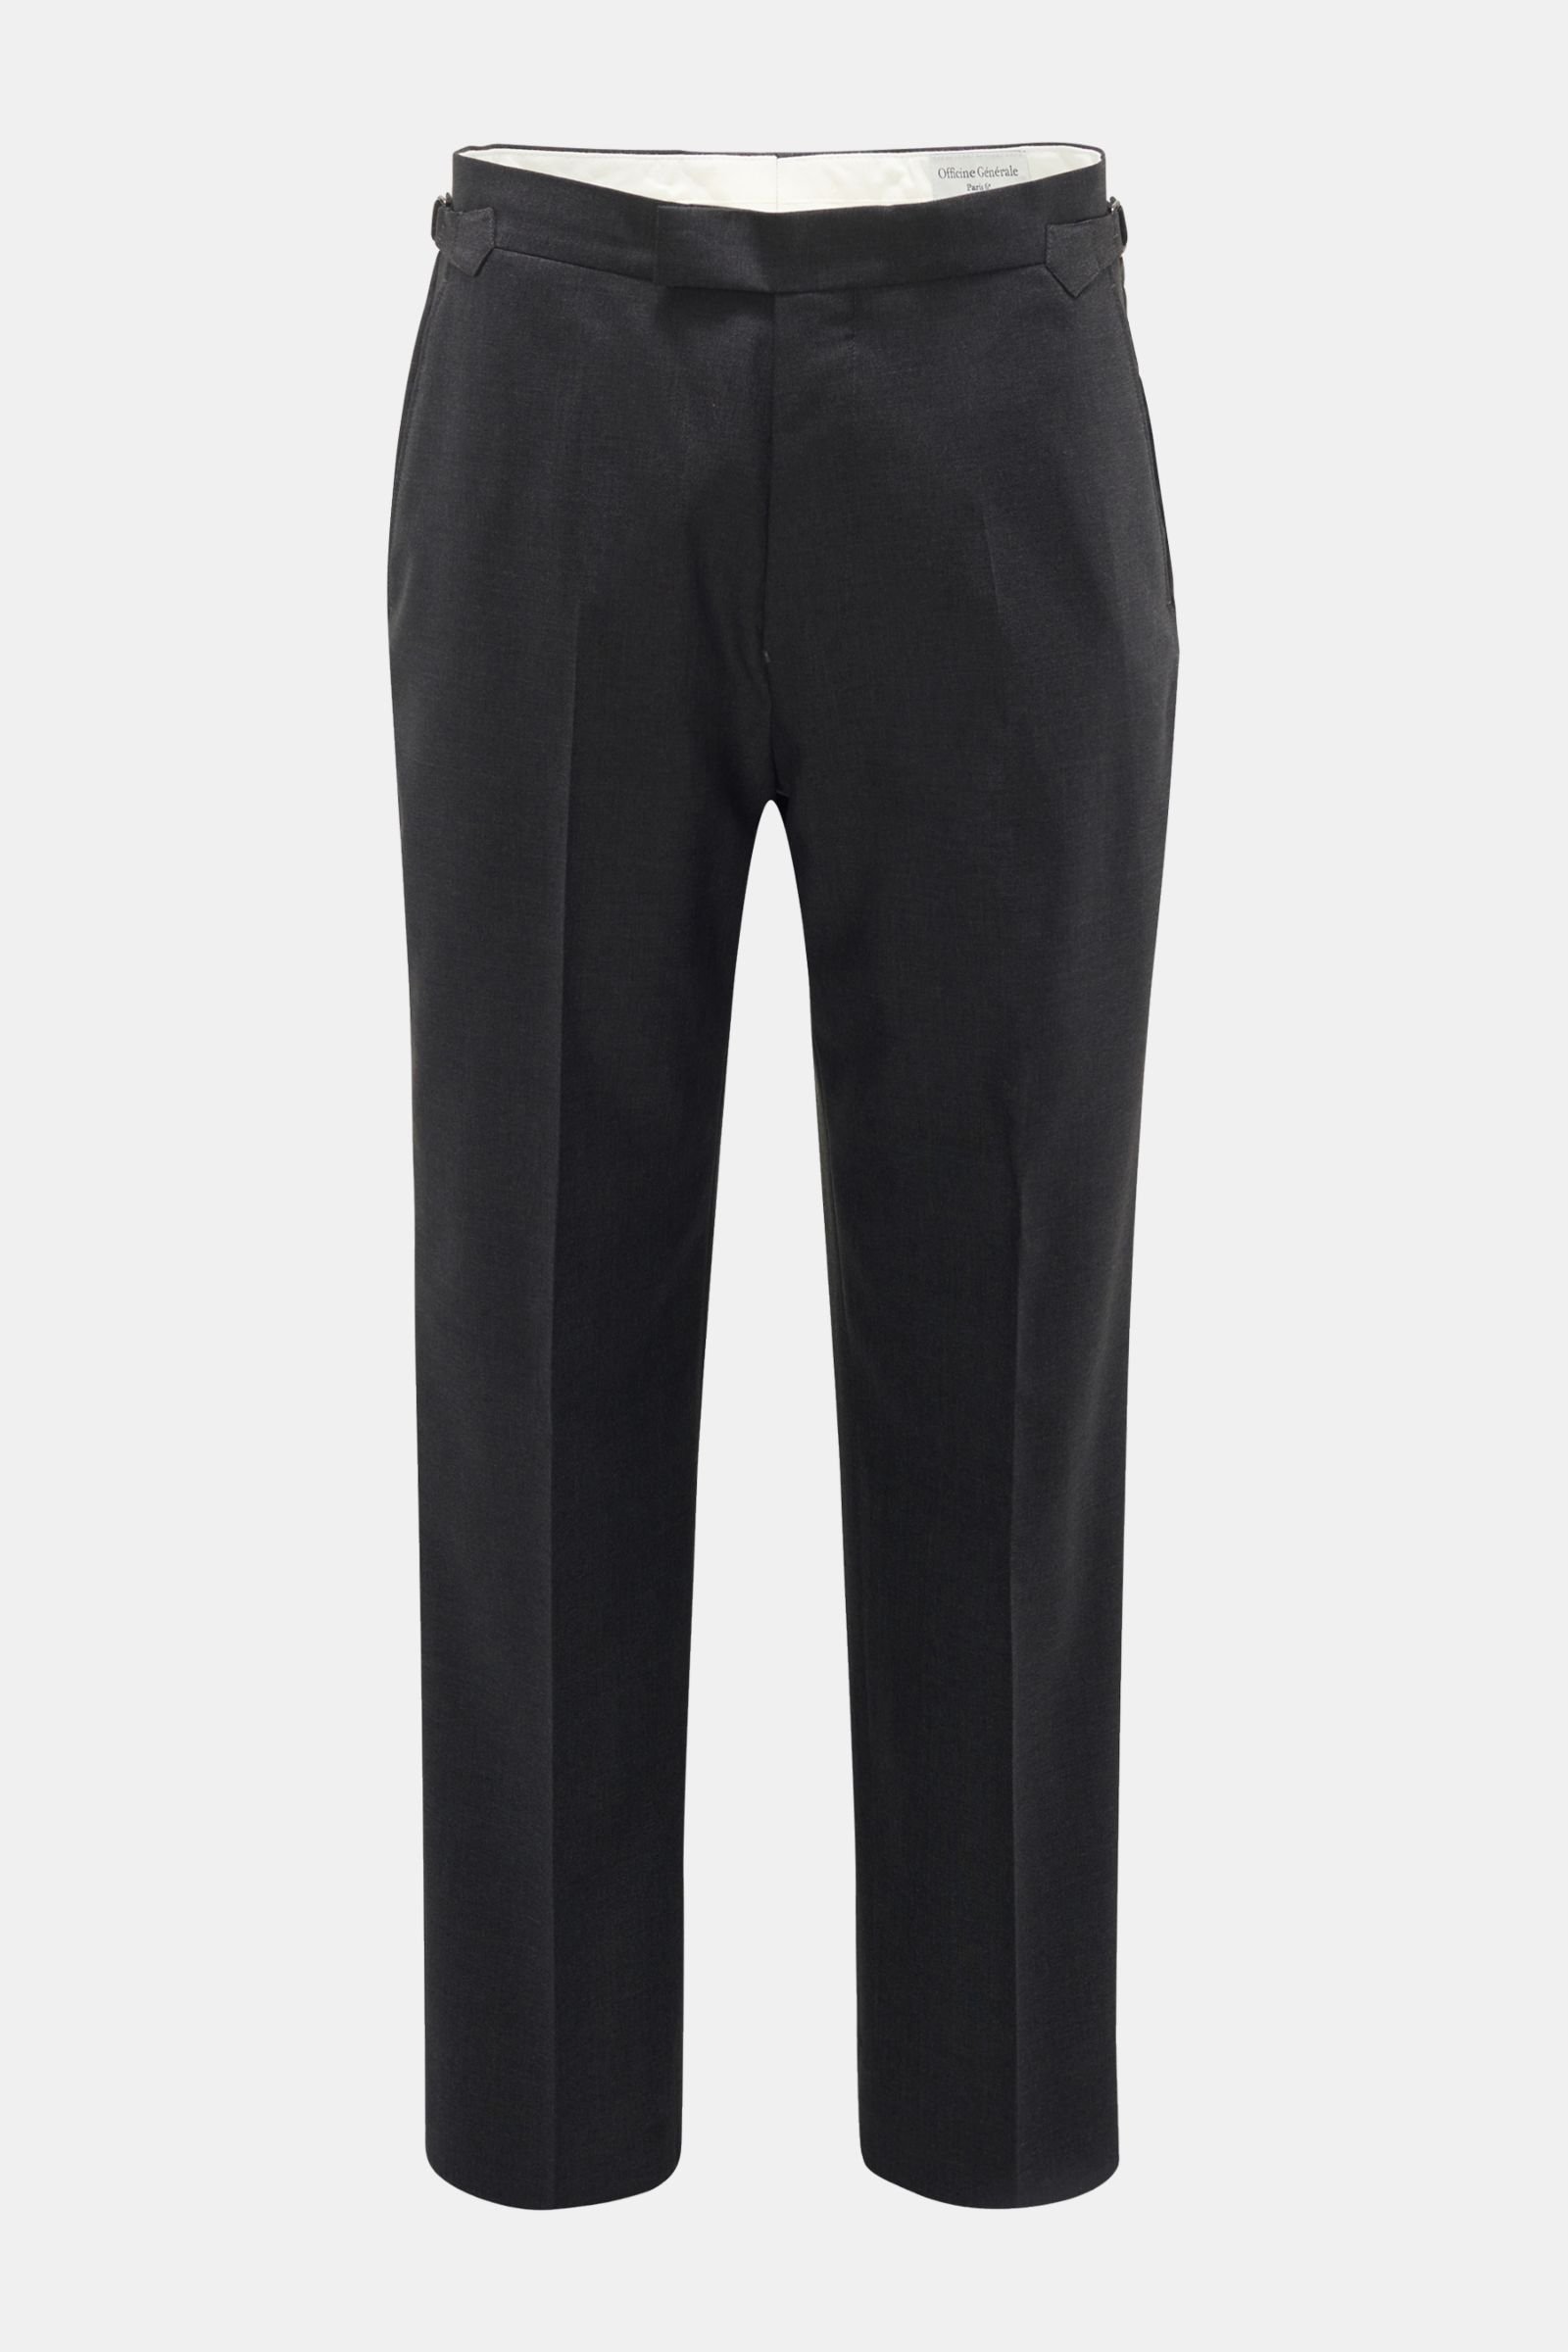 'Nicolas' wool trousers dark grey